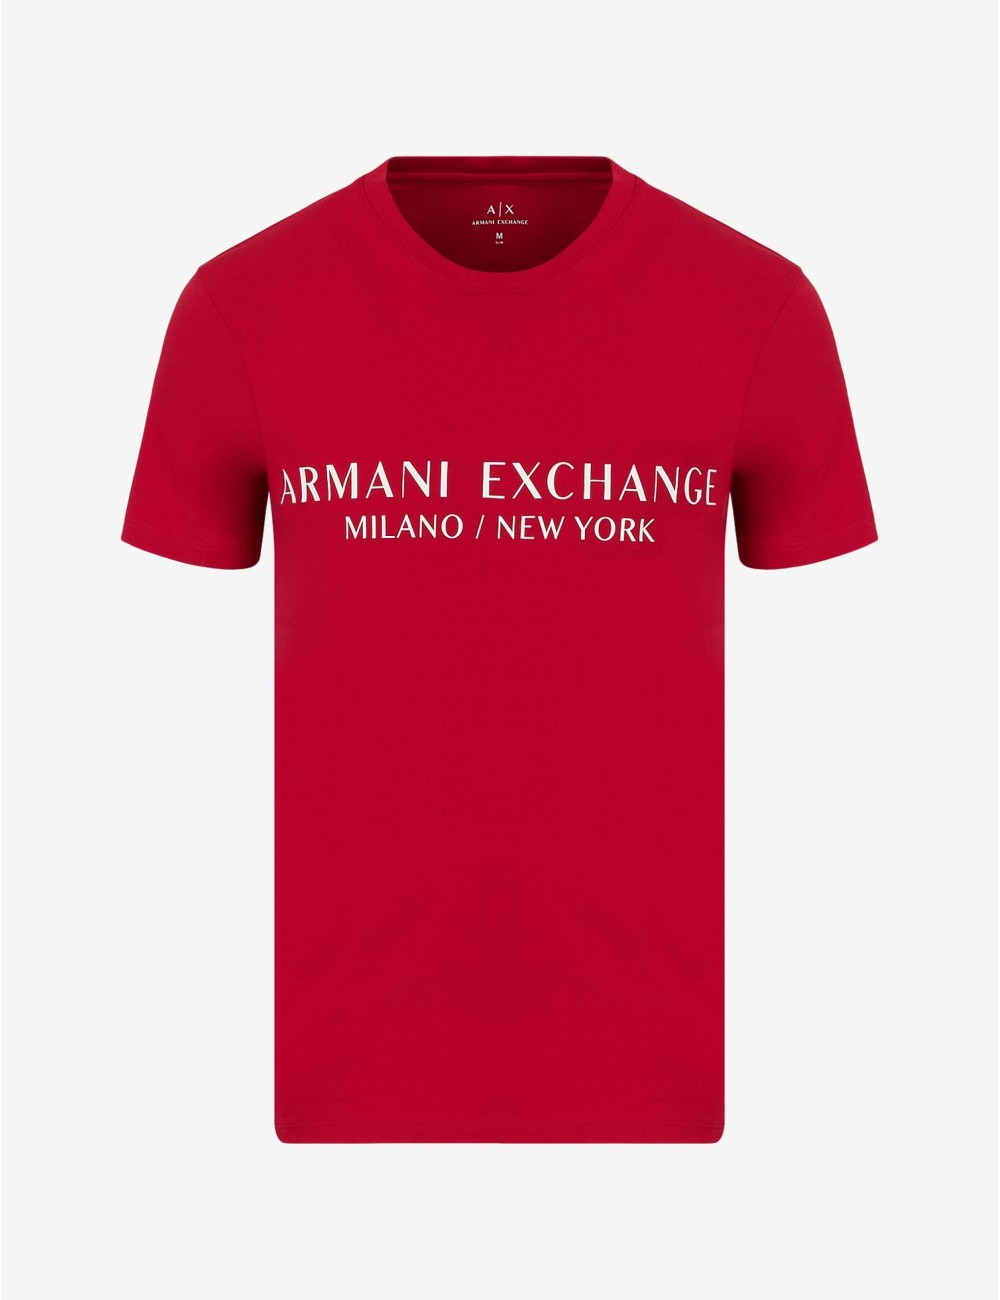 ARMANI EXCHANGE RED MEN'S T-SHIRT